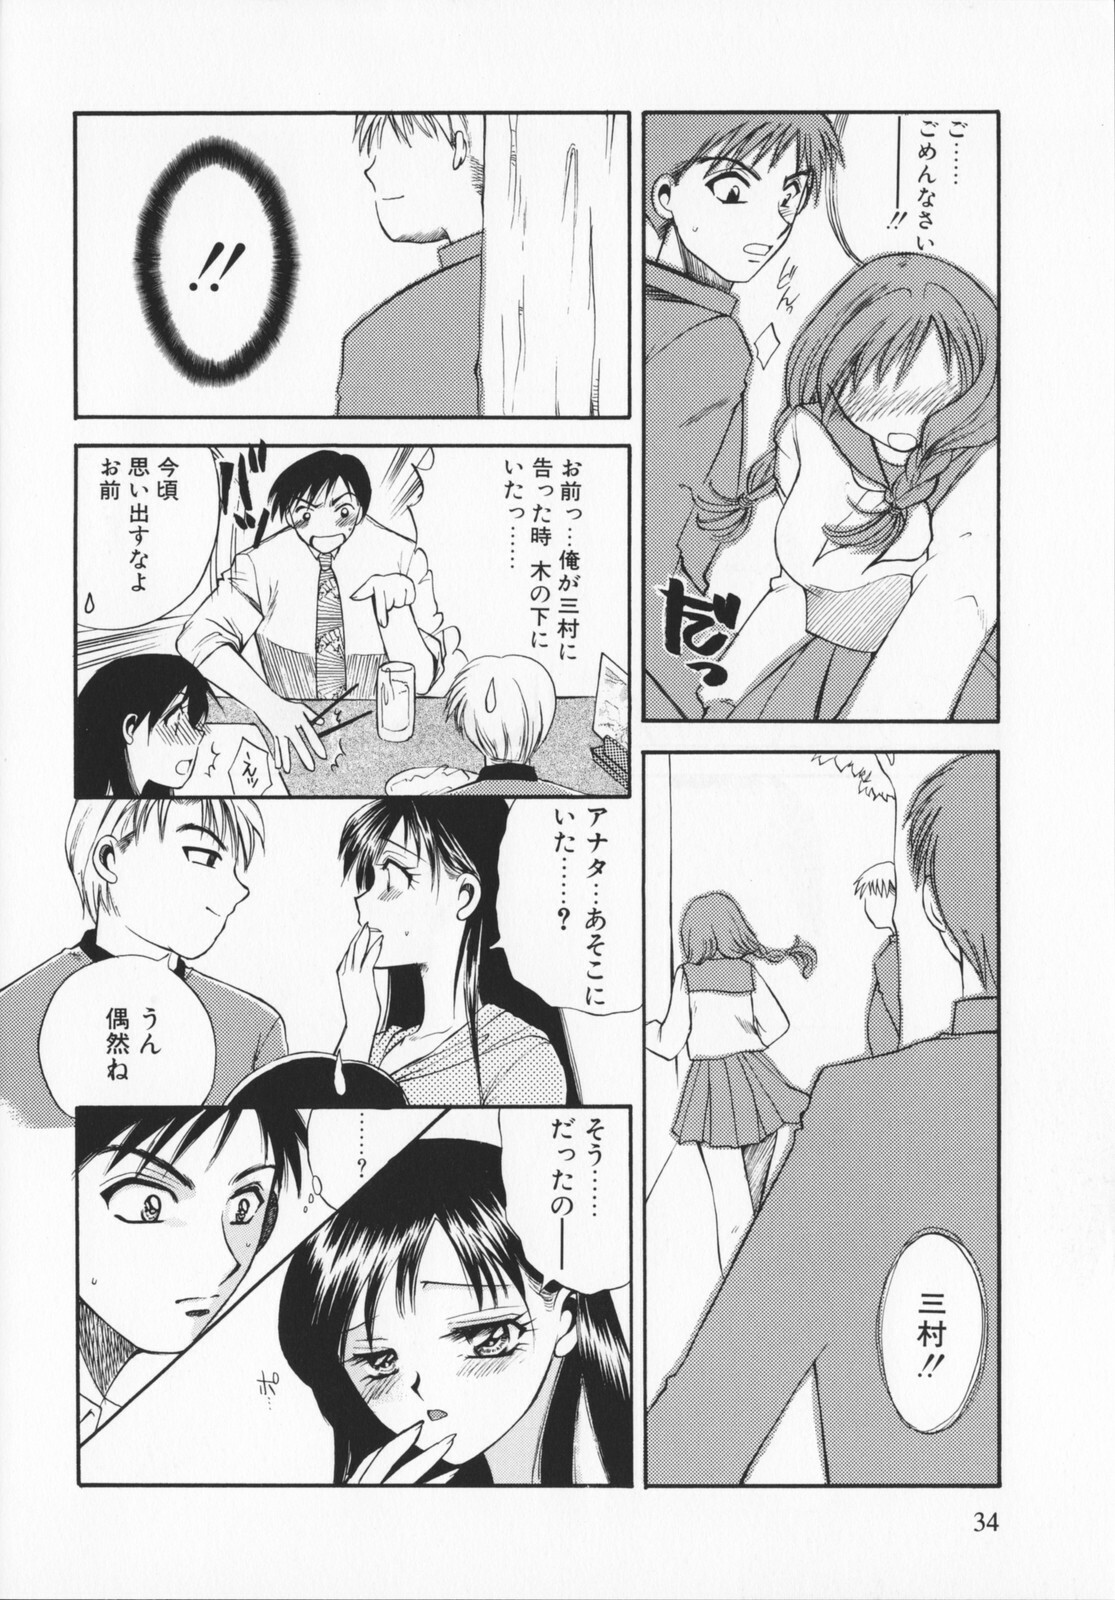 [Ureshino Megumi]Genkaiharetsu (LIMIT EXPLOSION) page 33 full